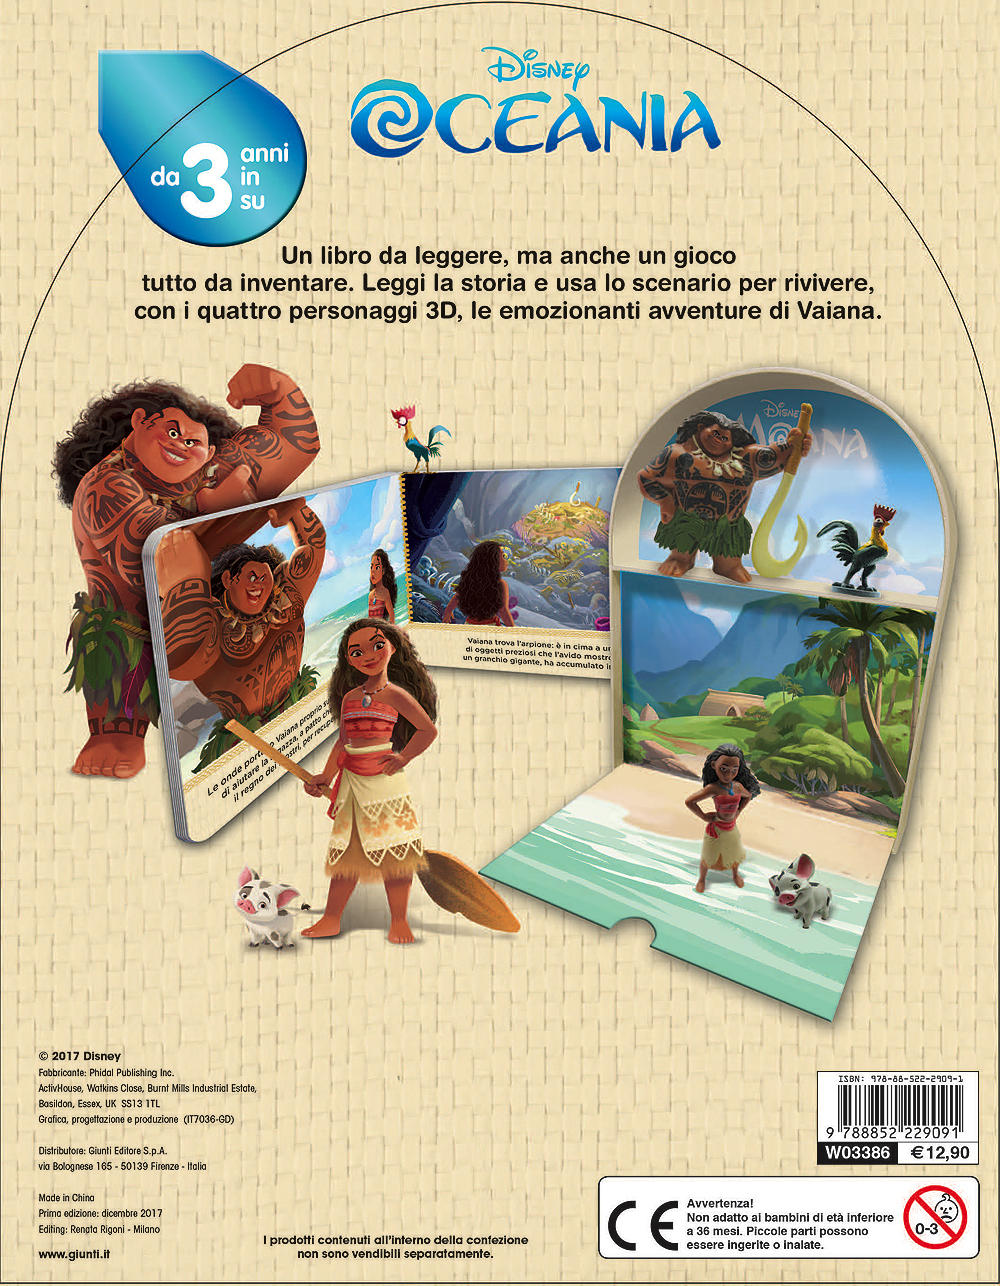 Oceania - LibroGiocaKit::Con 4 personaggi 3D e 1 scenario per giocare!